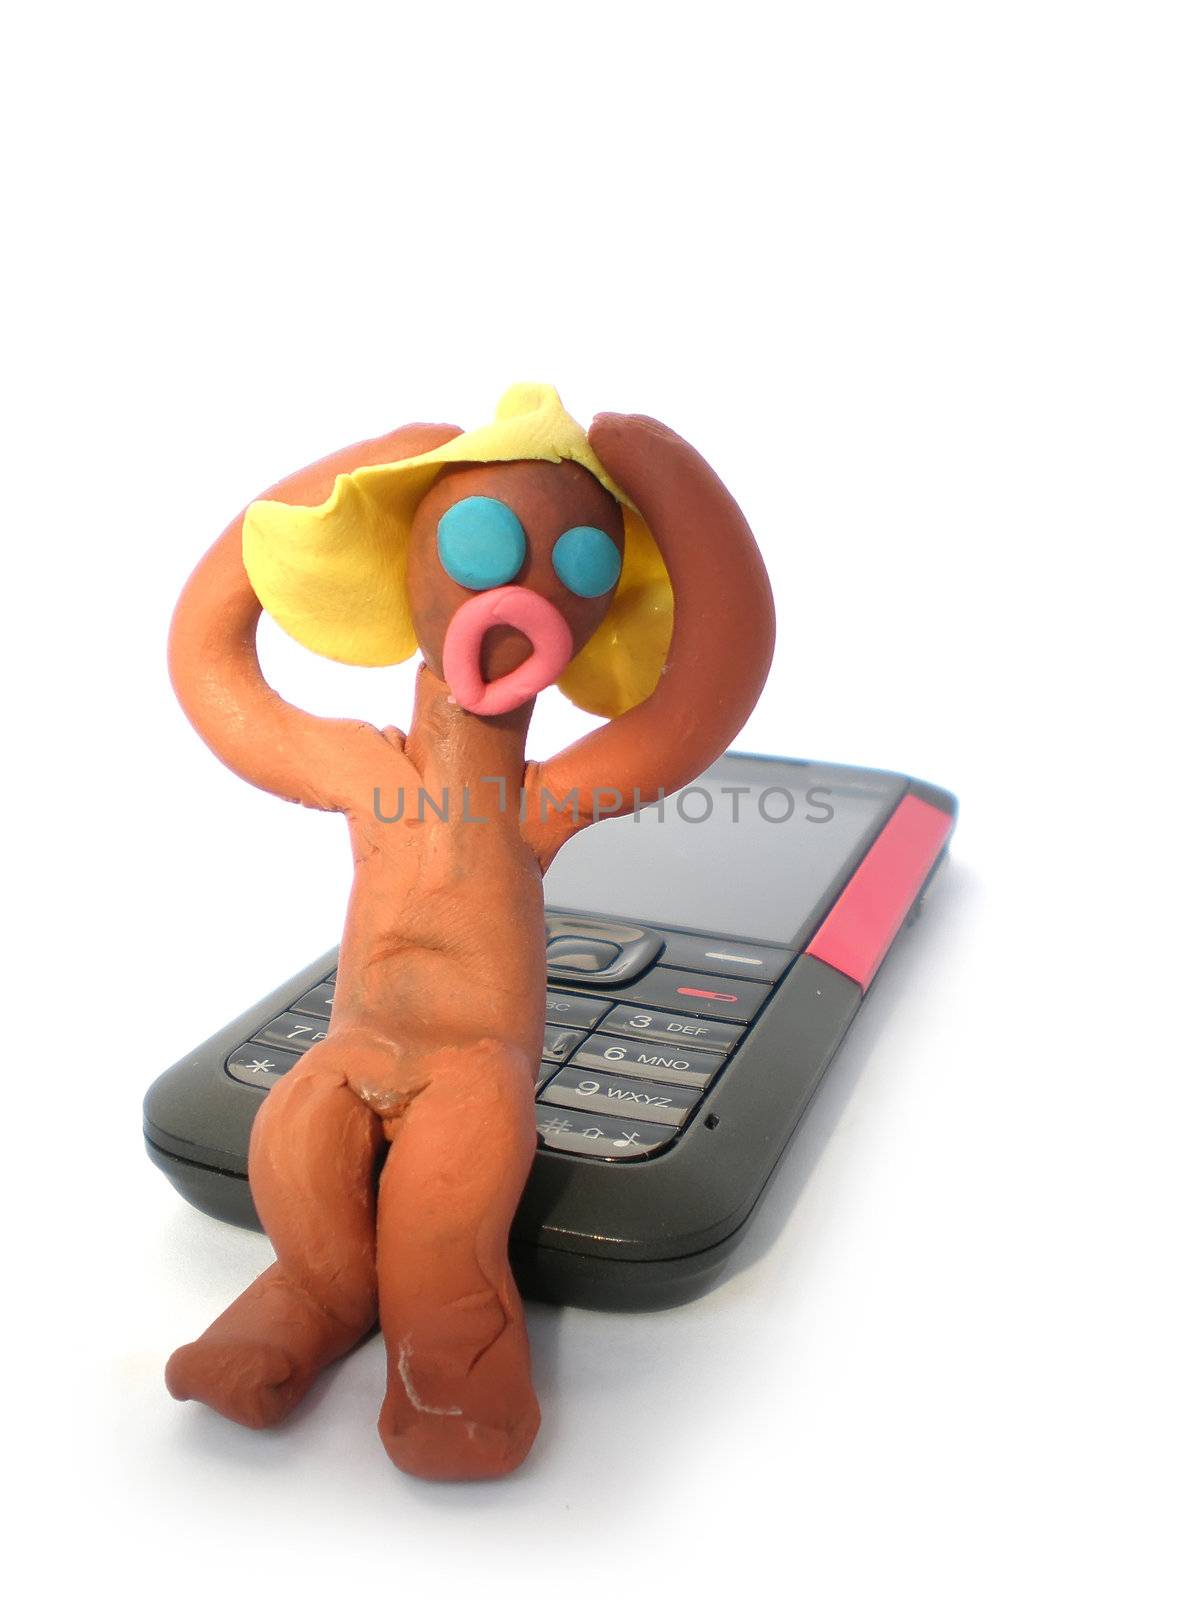 plasticine man figure with phone by Dessie_bg